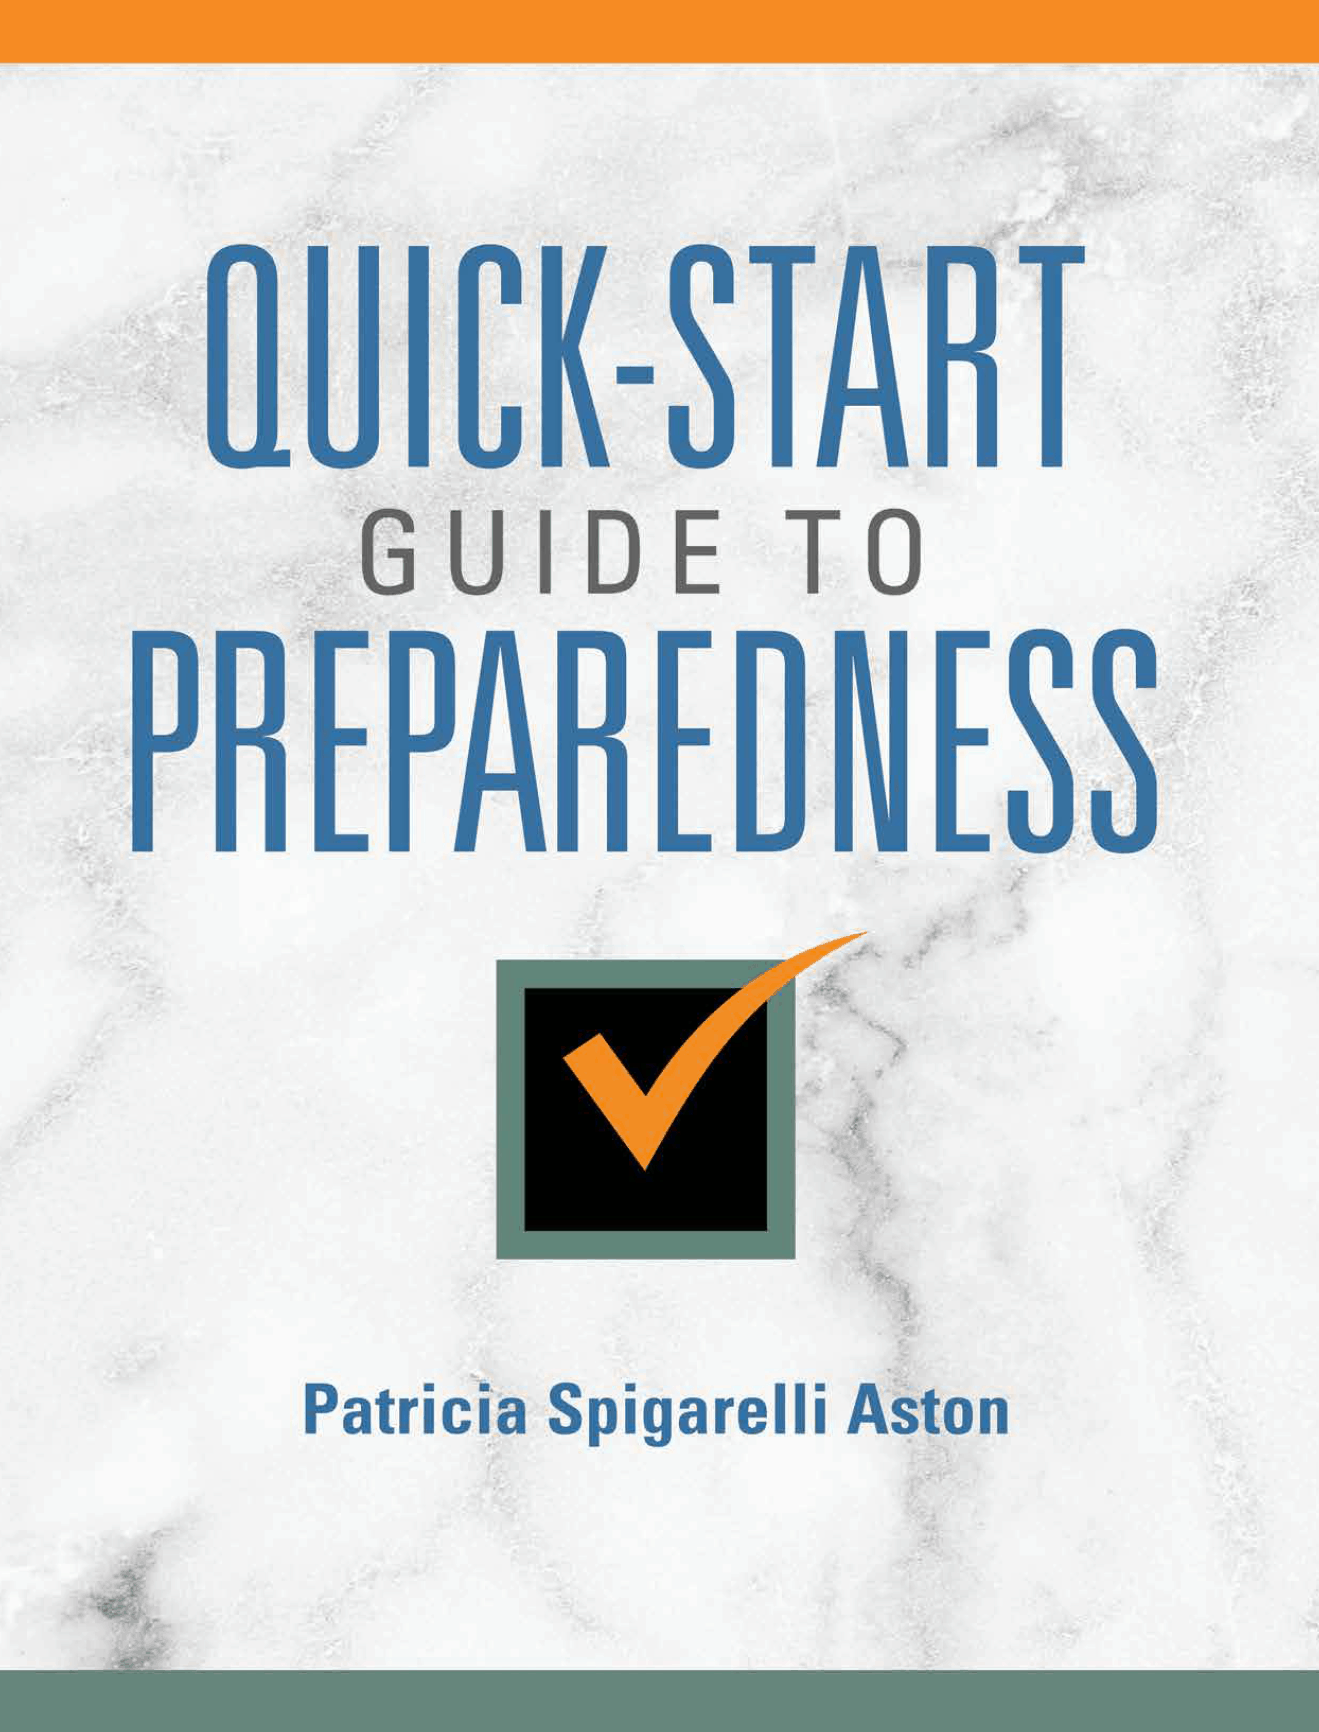 Quick Start Guide to Preparedness